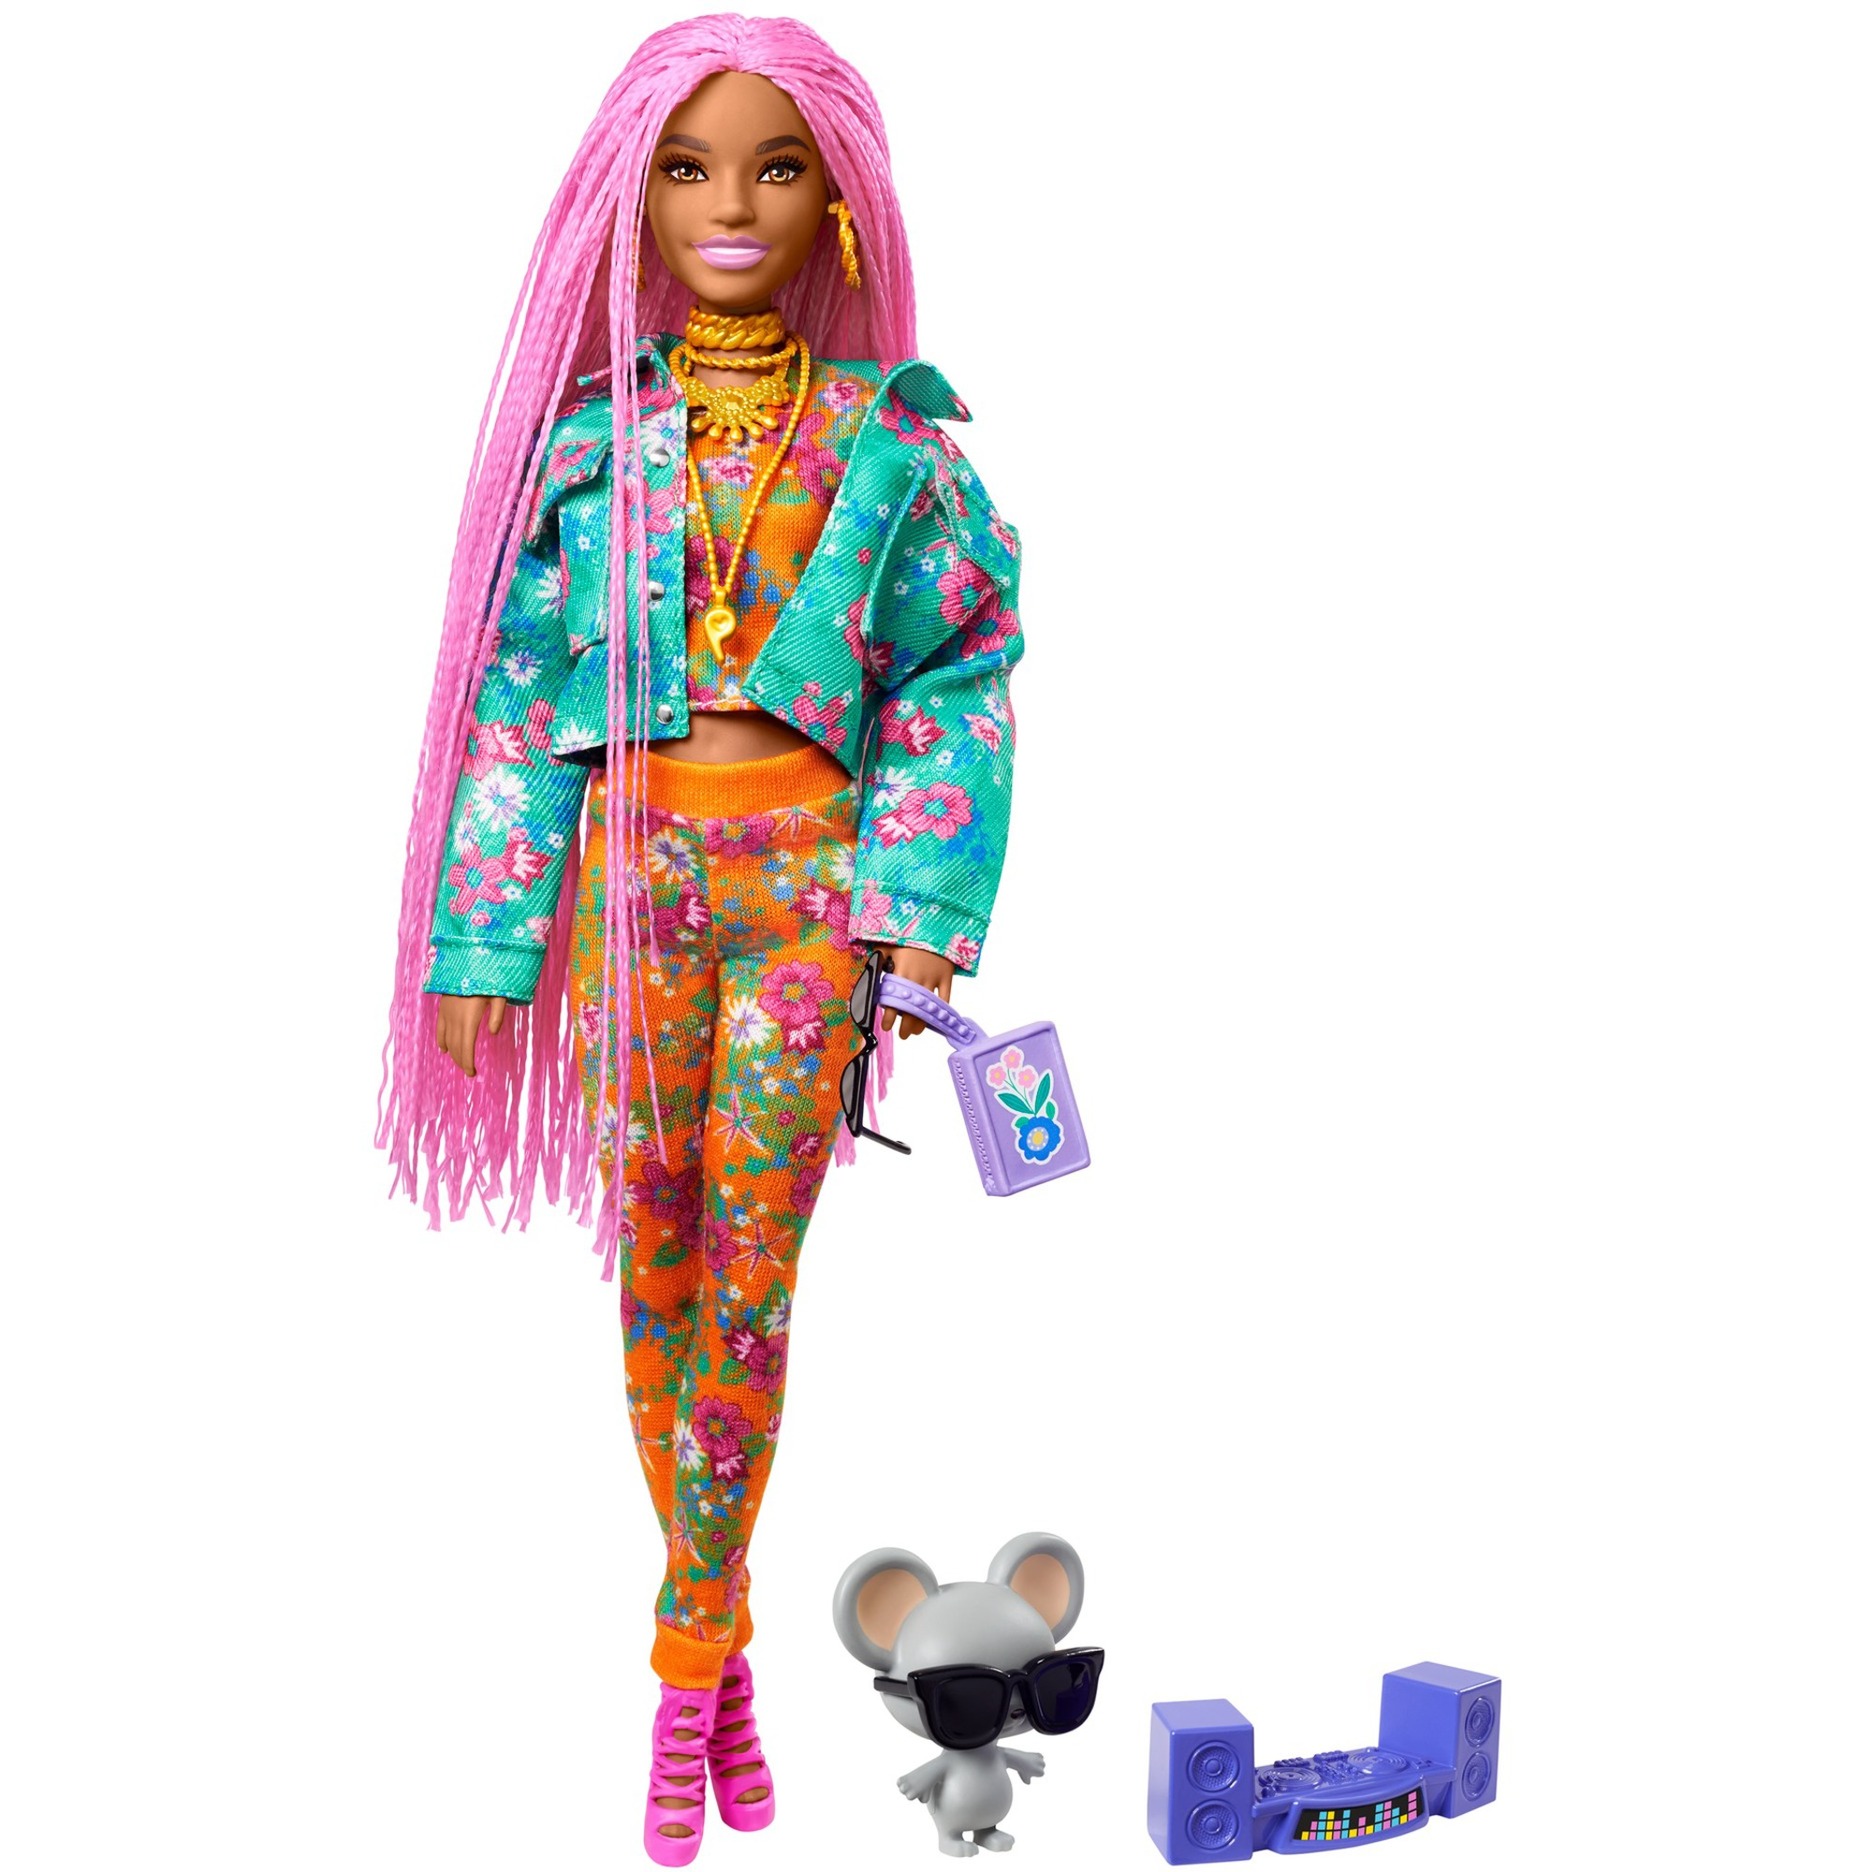 Image of Alternate - Barbie Extra Puppe mit pinken Flechtzöpfen online einkaufen bei Alternate